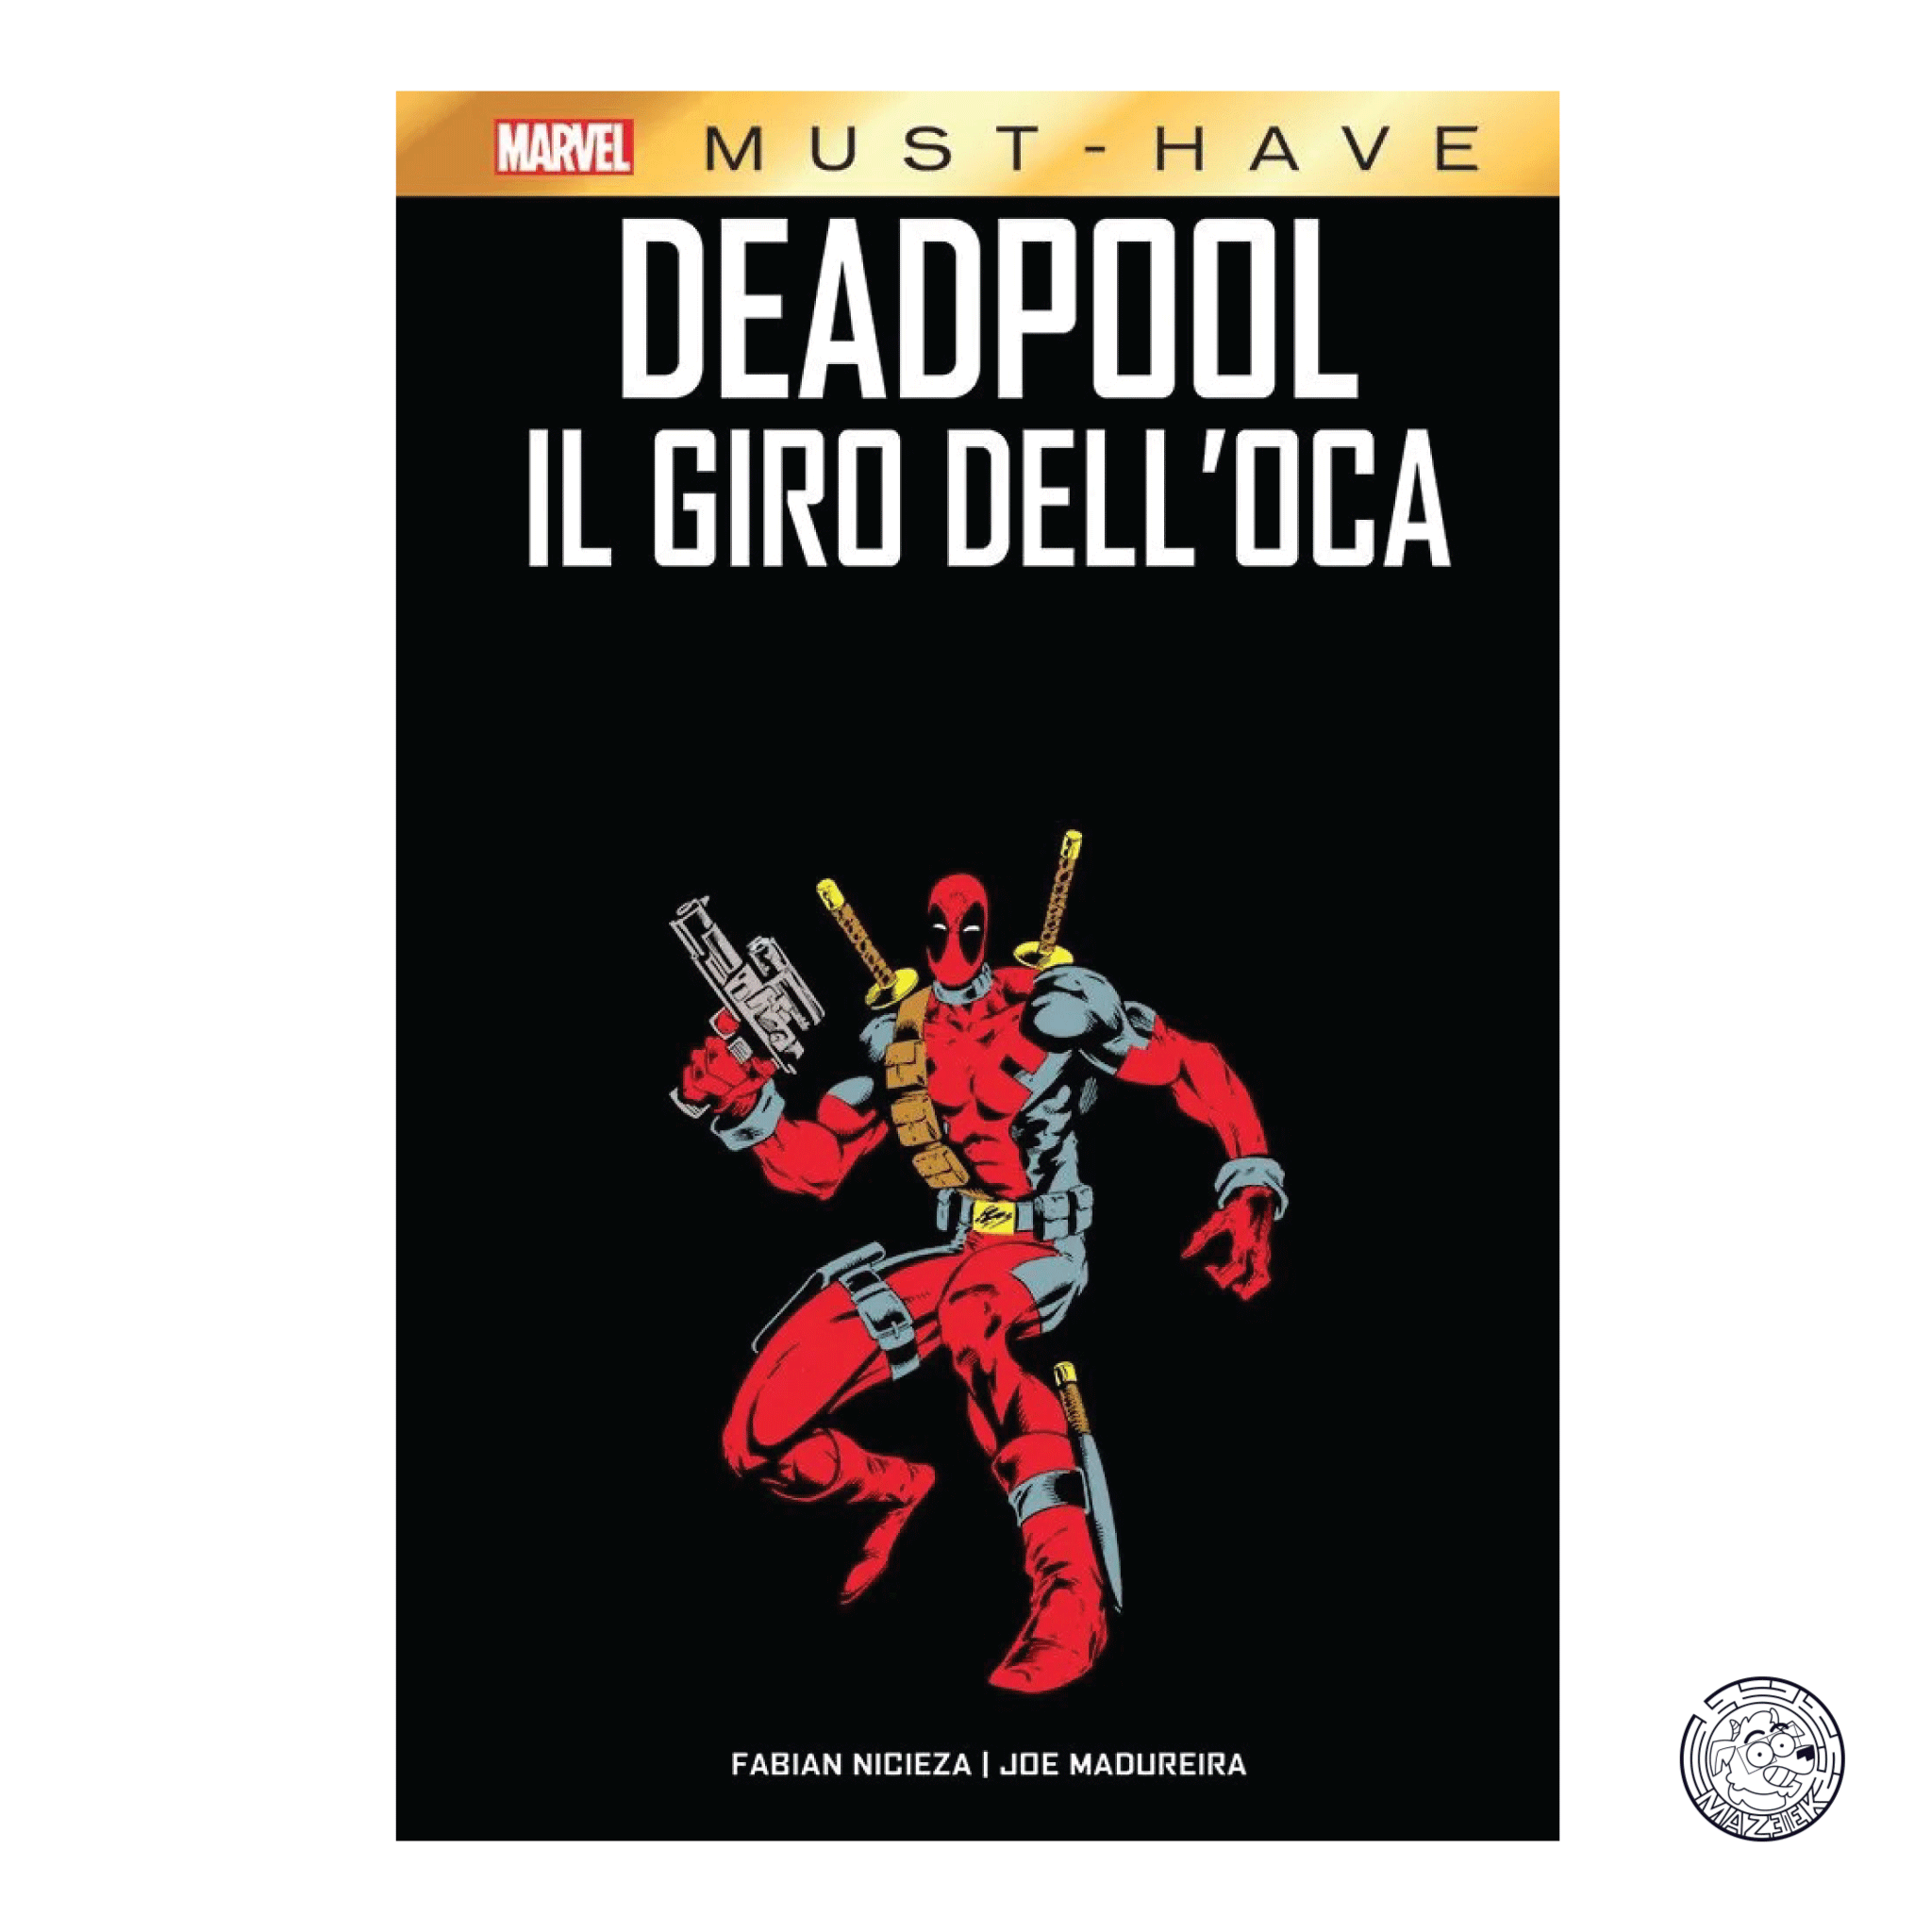 Marvel Must Have - Deadpool: Il Giro dell' Oca